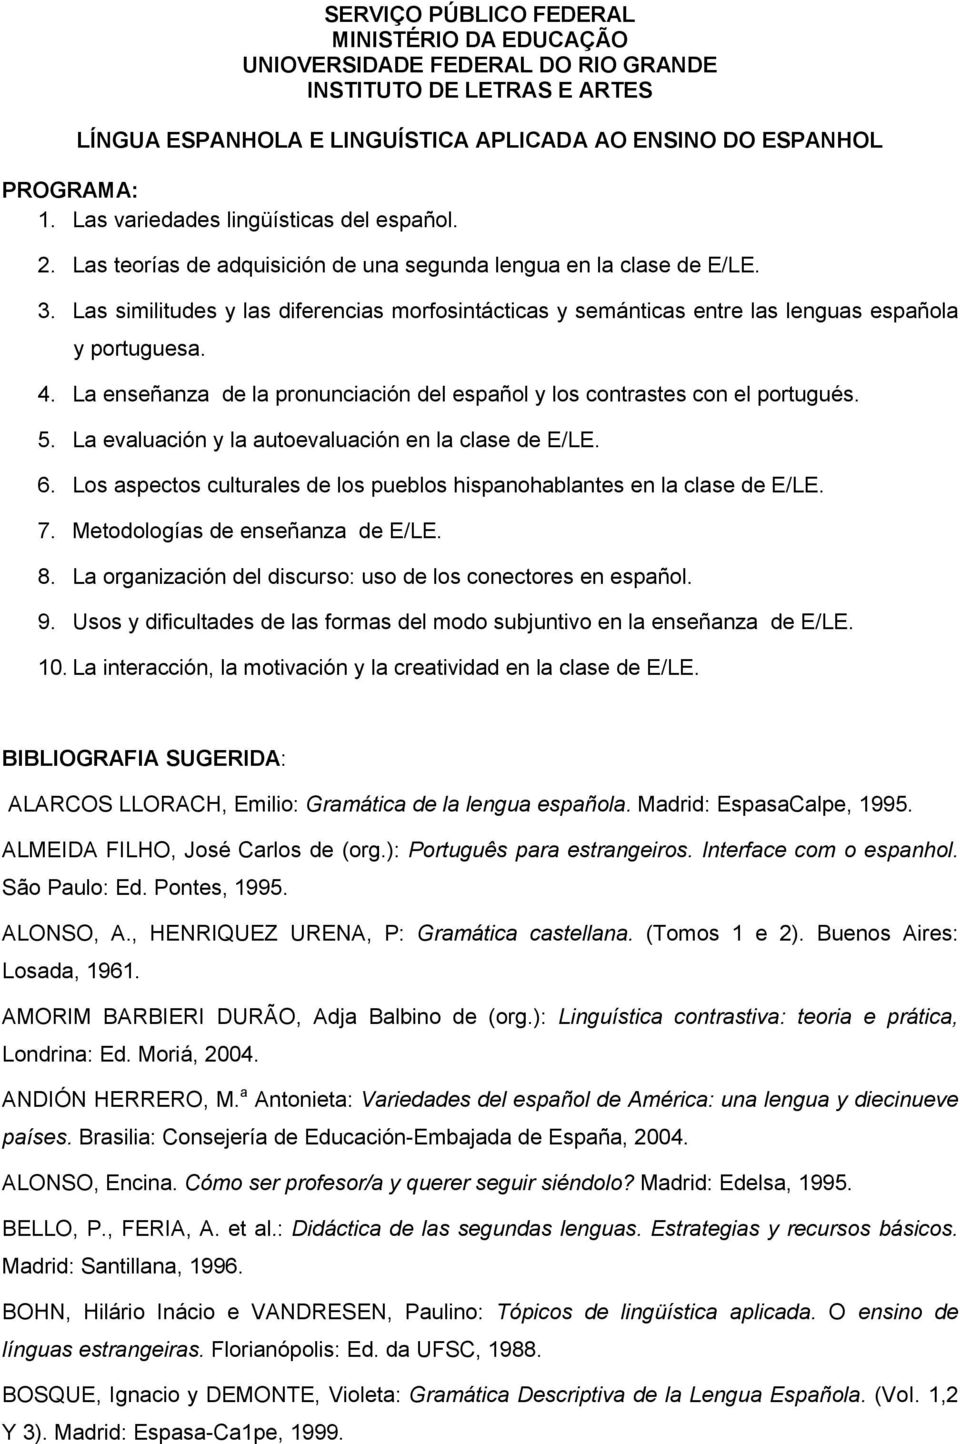 La evaluación y la autoevaluación en la clase de E/LE. 6. Los aspectos culturales de los pueblos hispanohablantes en la clase de E/LE. 7. Metodologías de enseñanza de E/LE. 8.